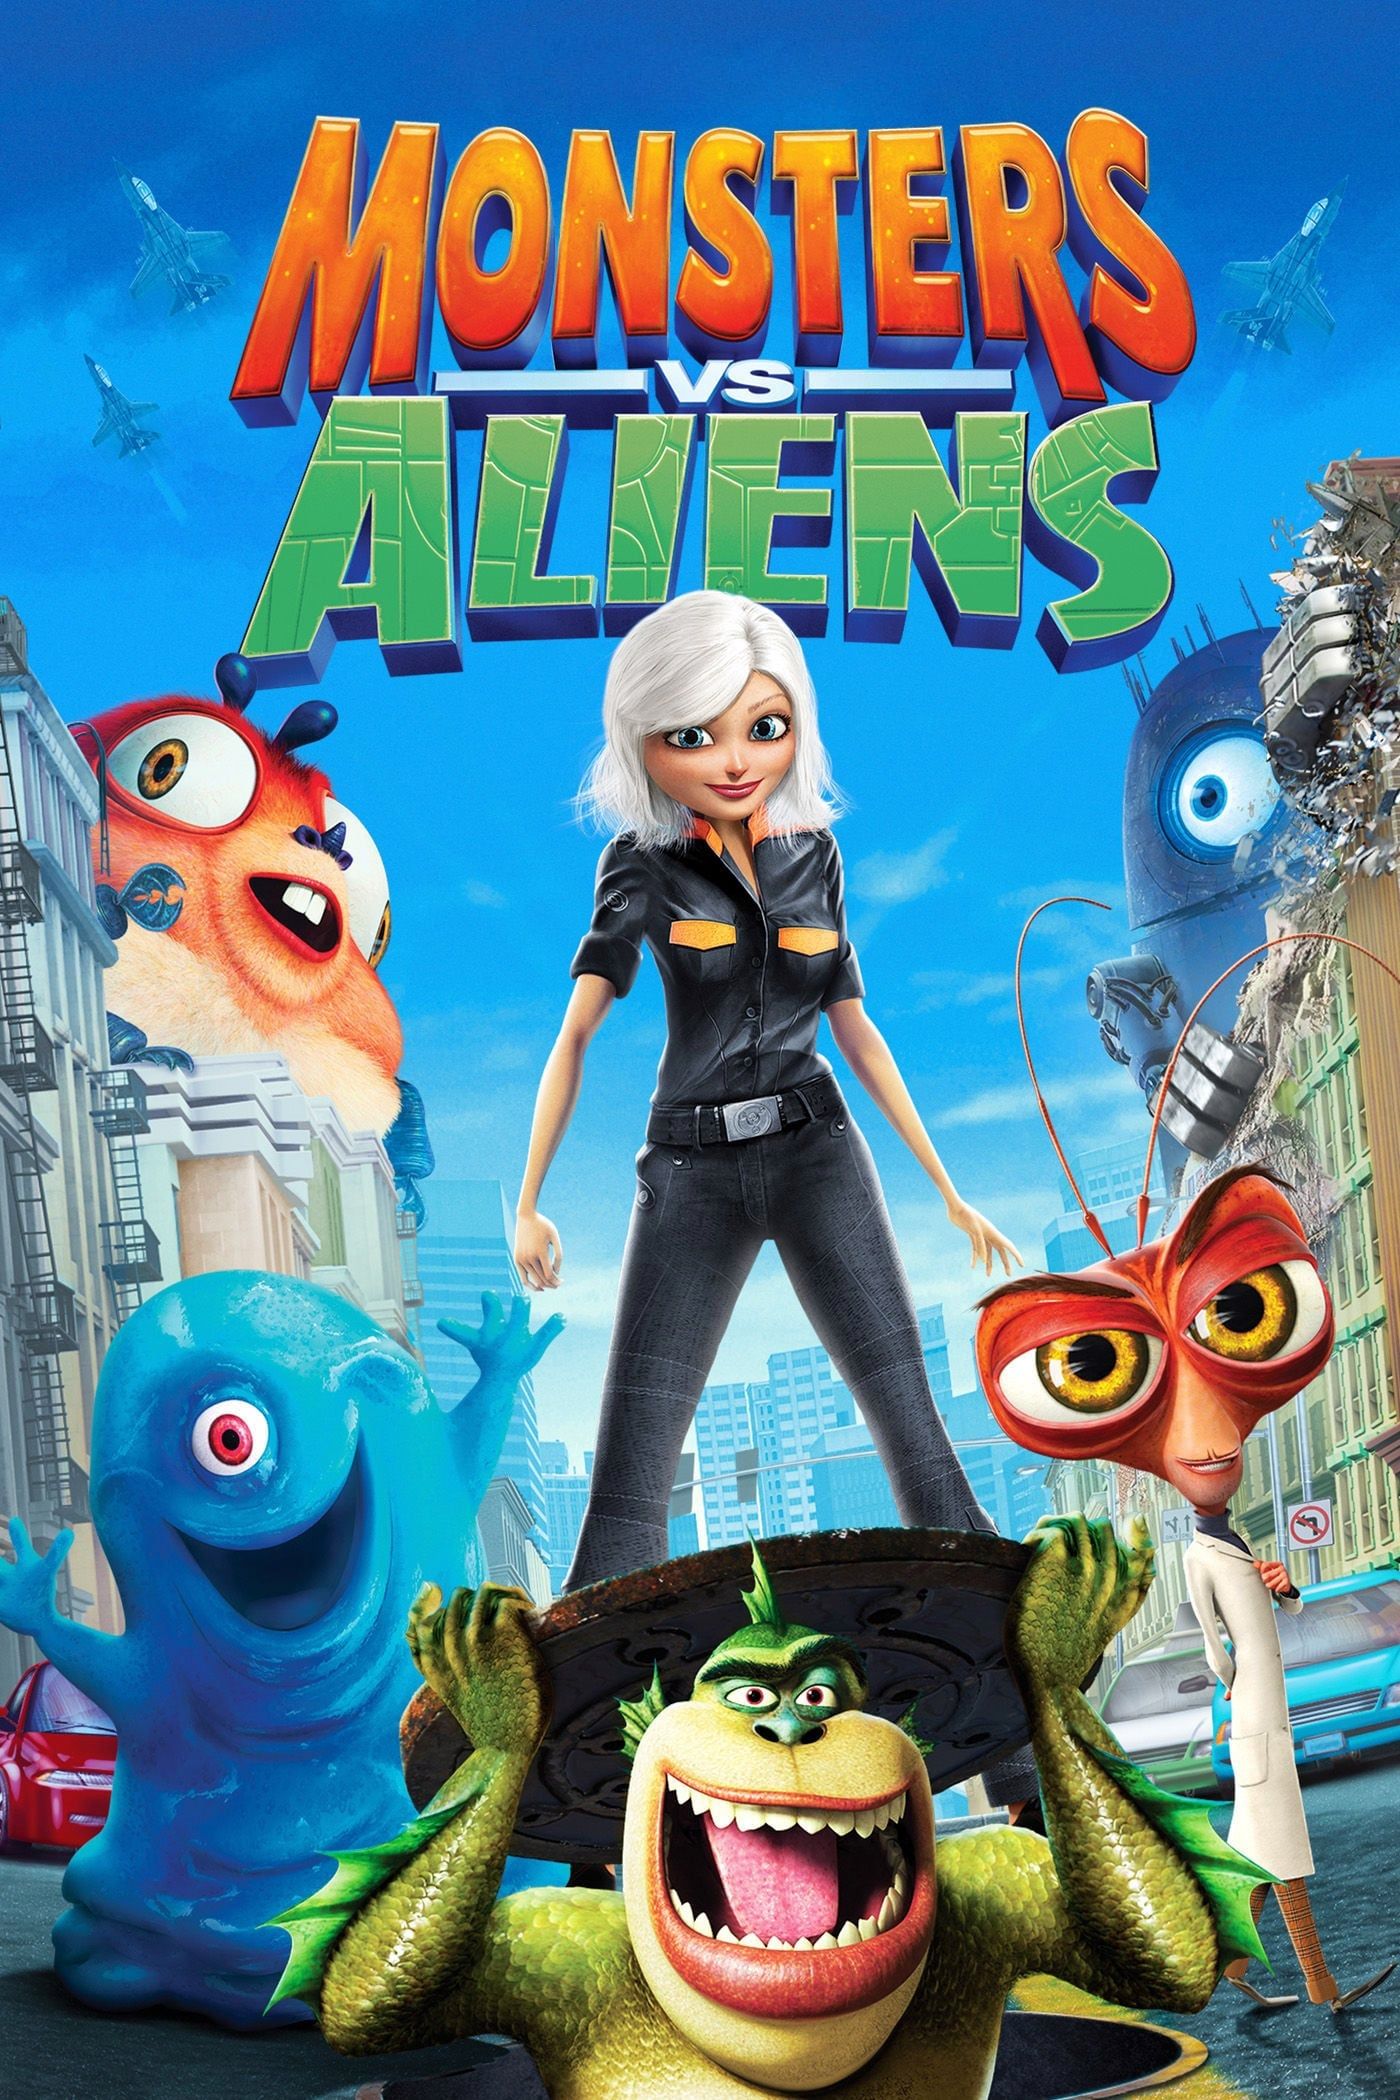 Monsters vs. Aliens (2009) MovieWeb